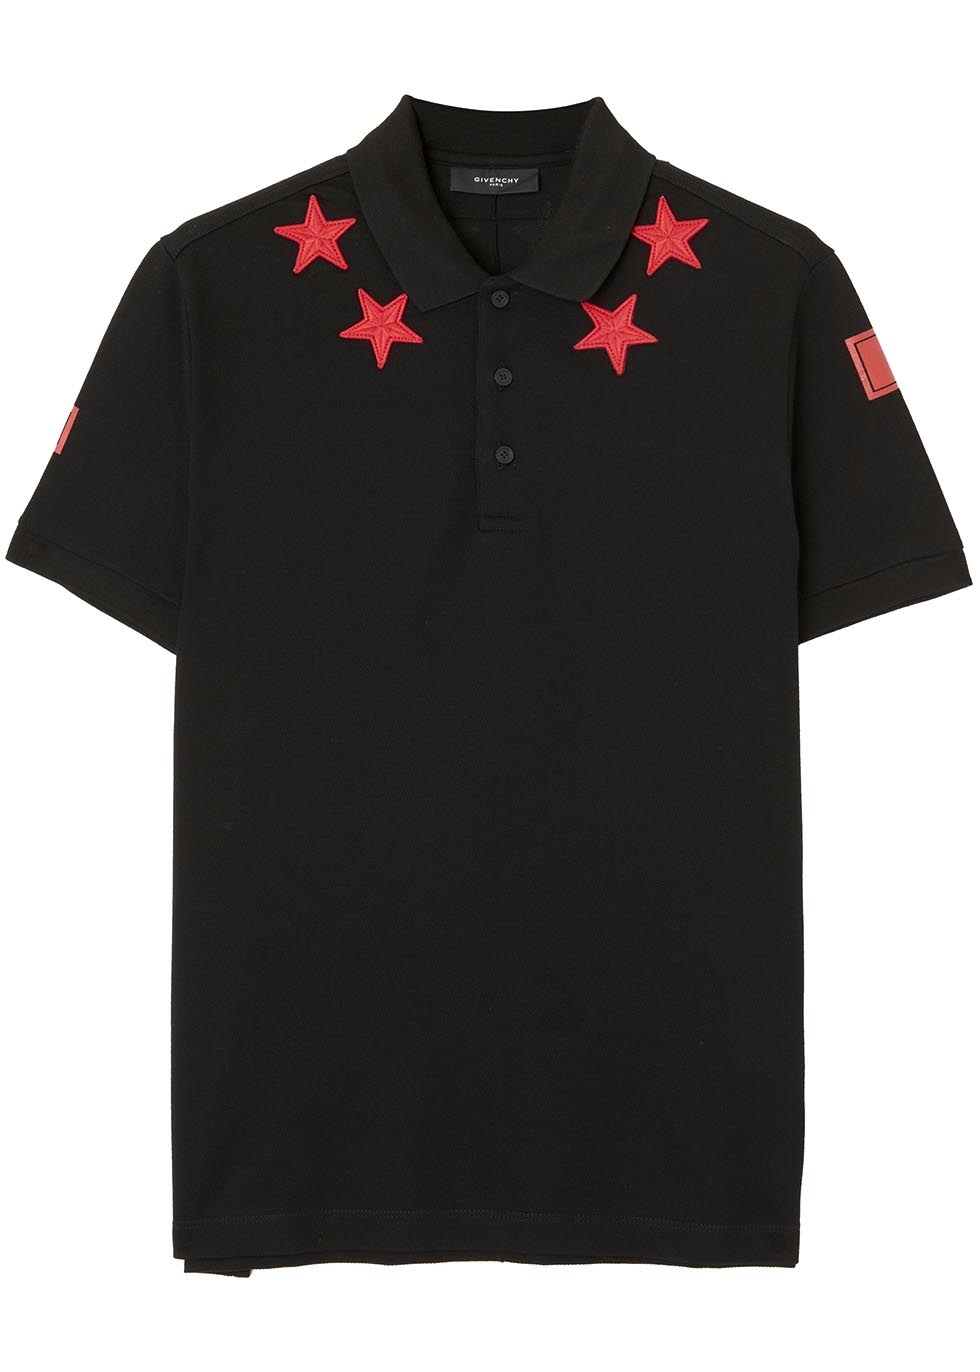 Black star piqué cotton polo shirt